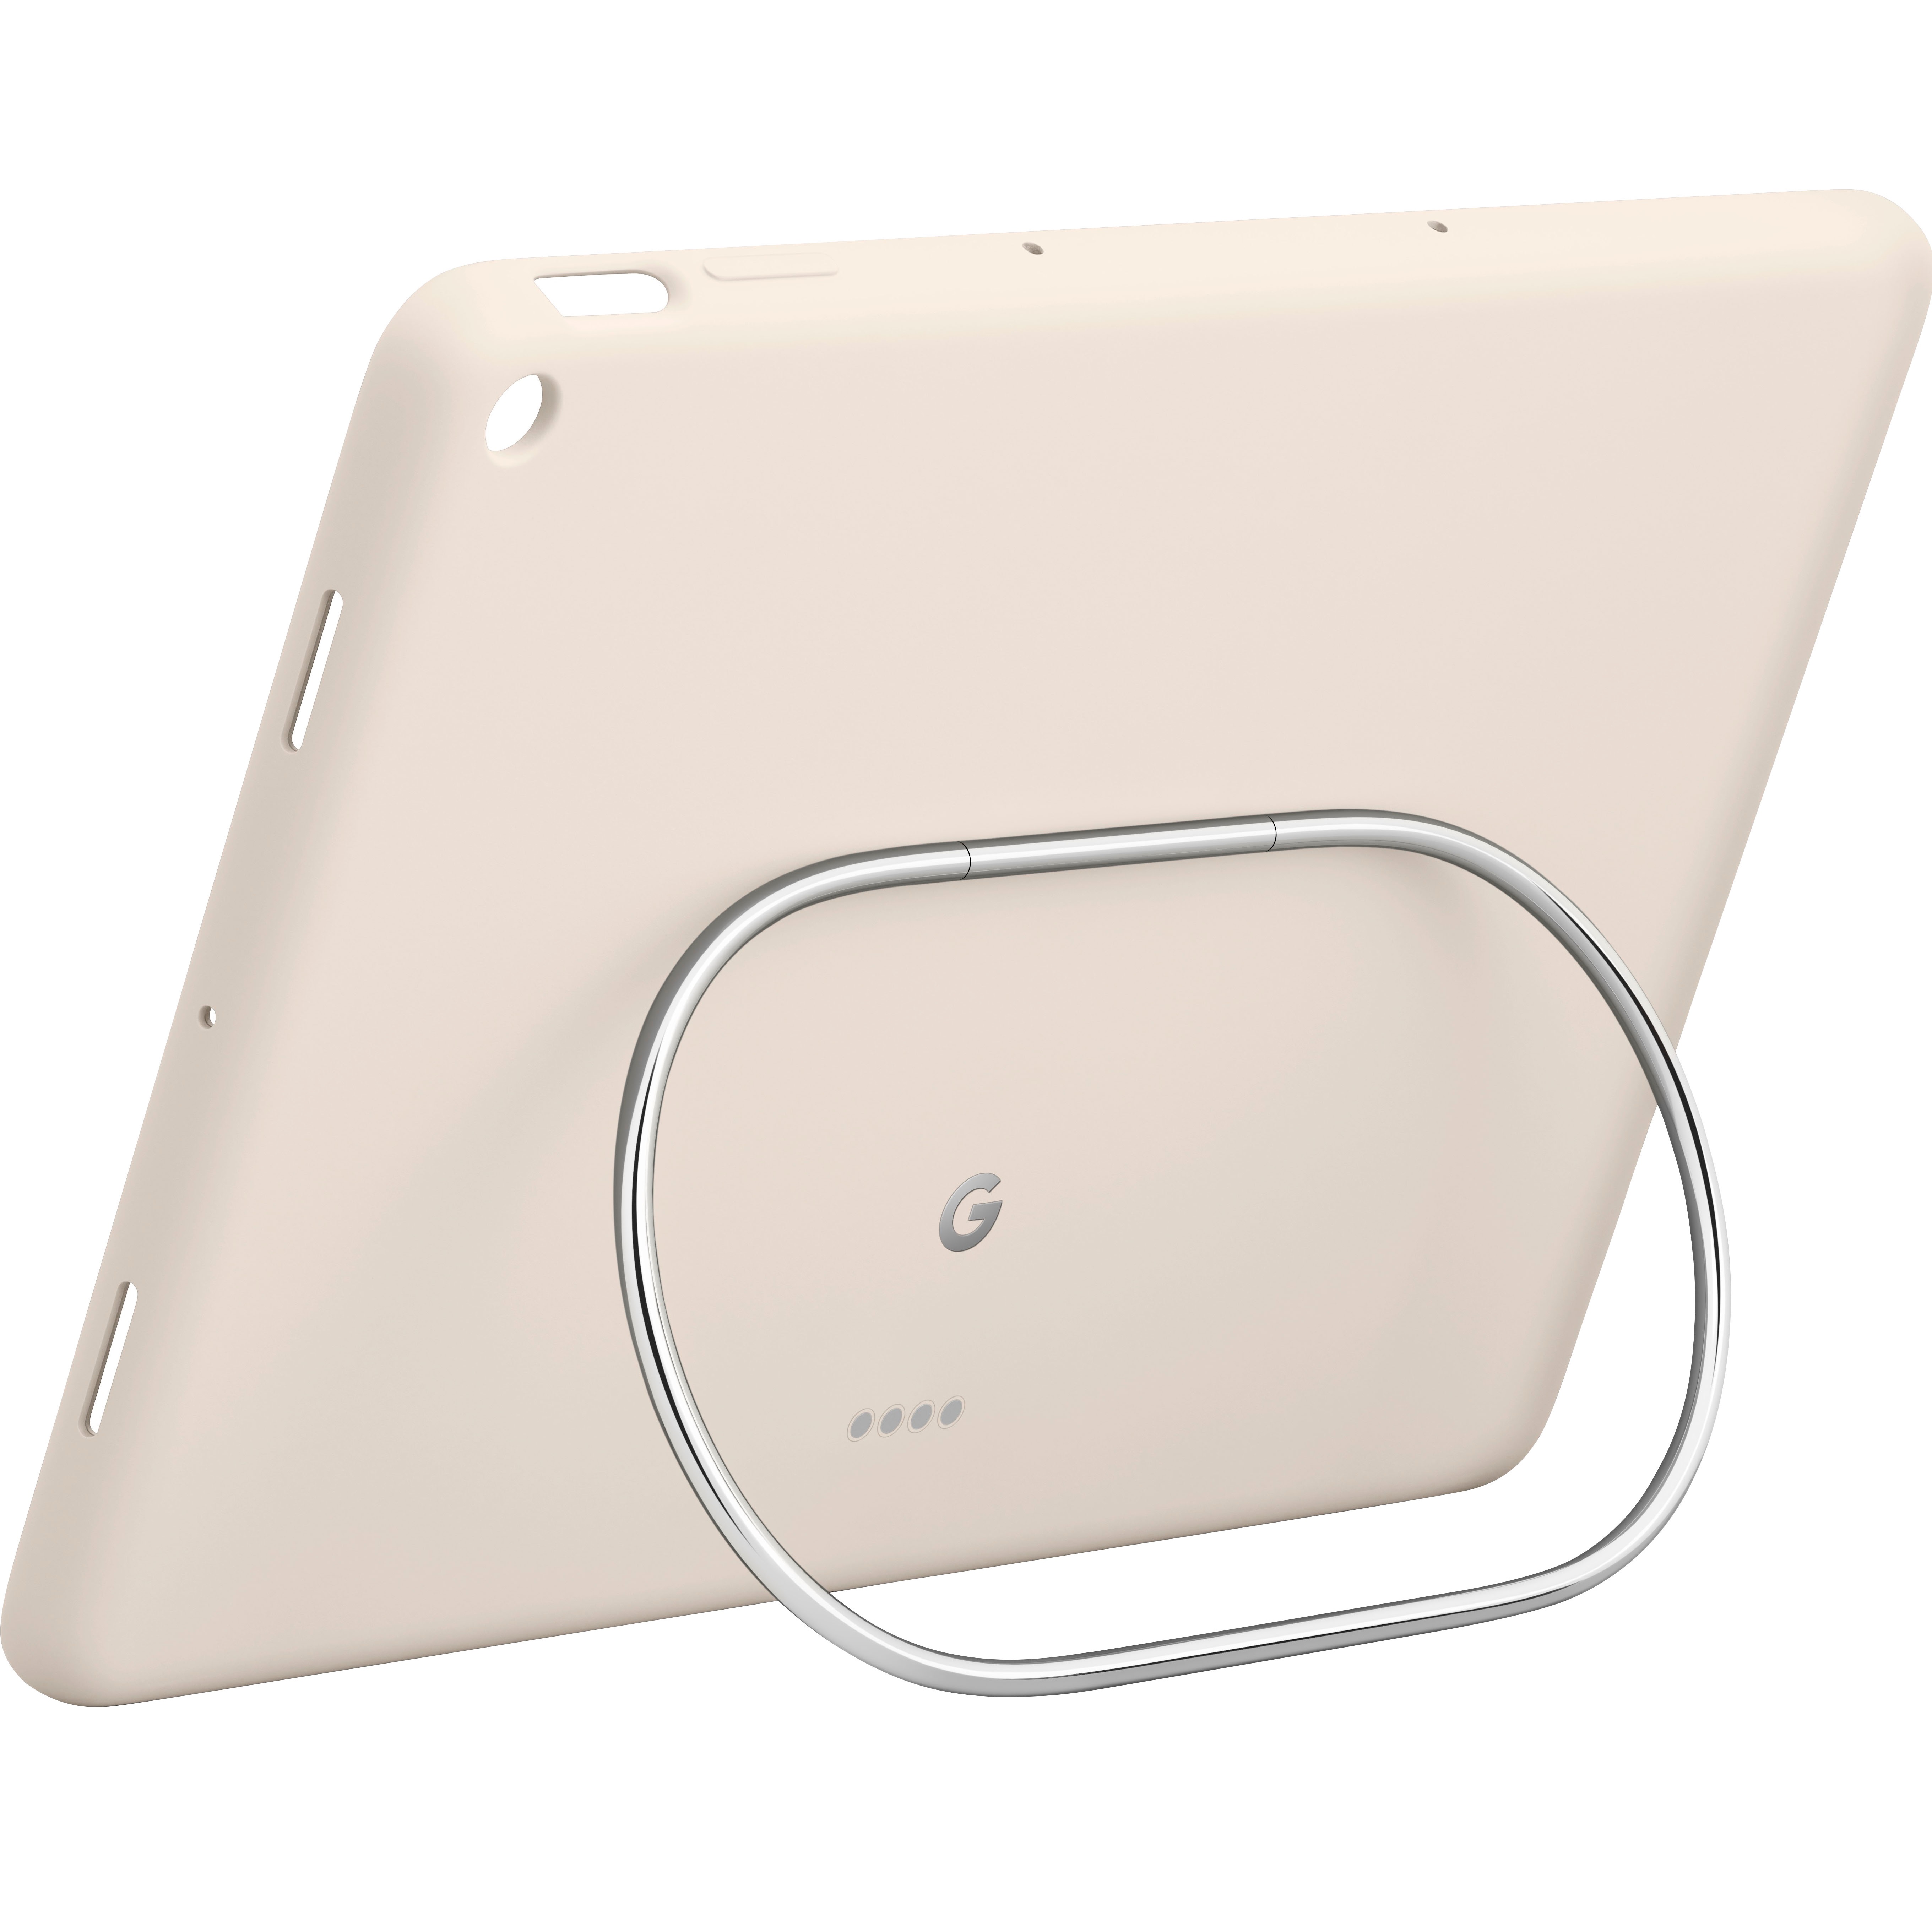 Google Pixel Tablet Case in Porcelain